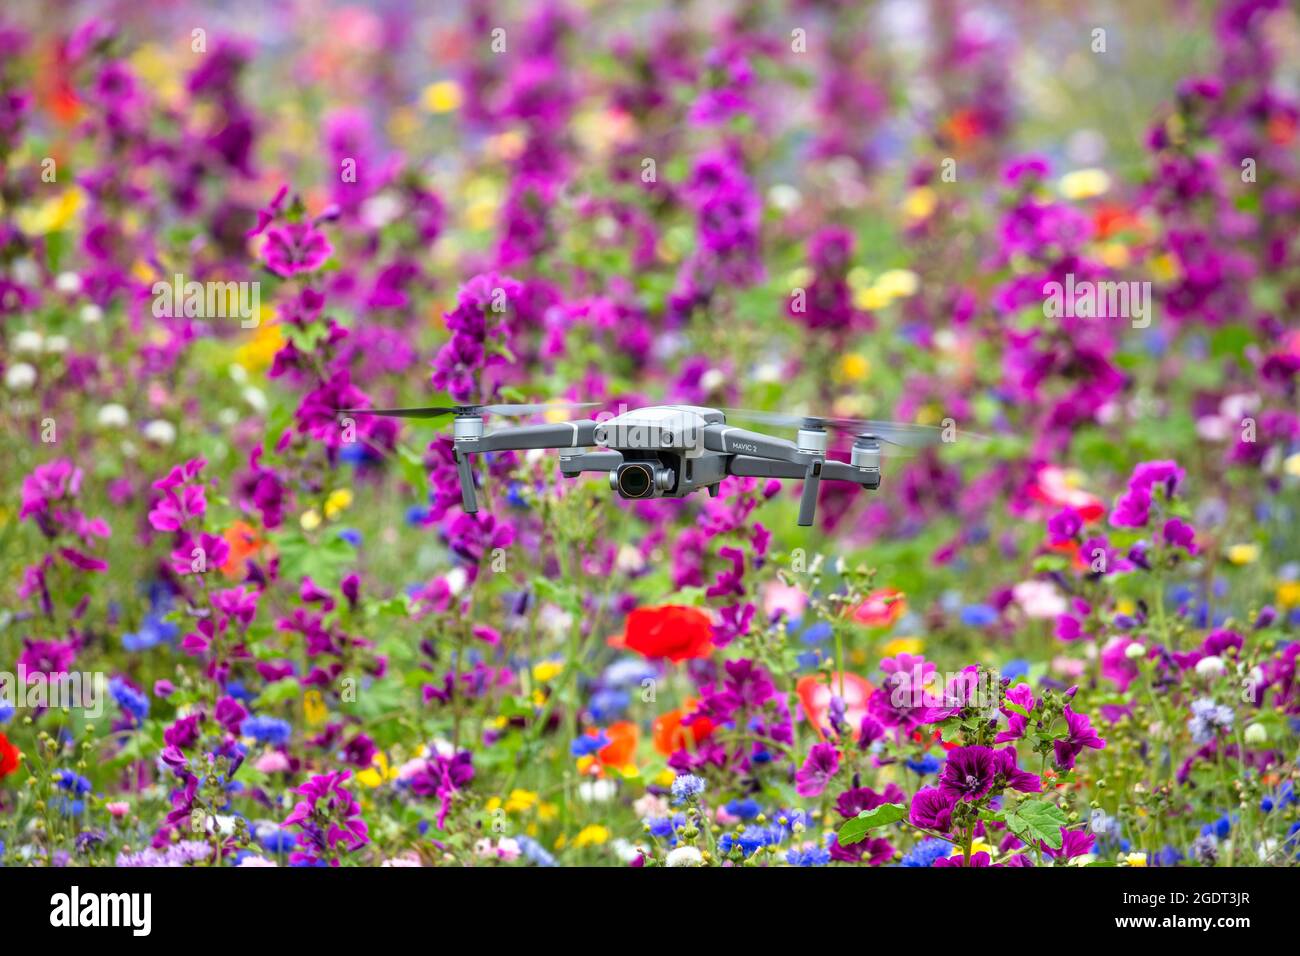 Pays-Bas, Warffum, fleurs sauvages pour l'enrichissement du sol. Drone DJI mavic pro. Banque D'Images